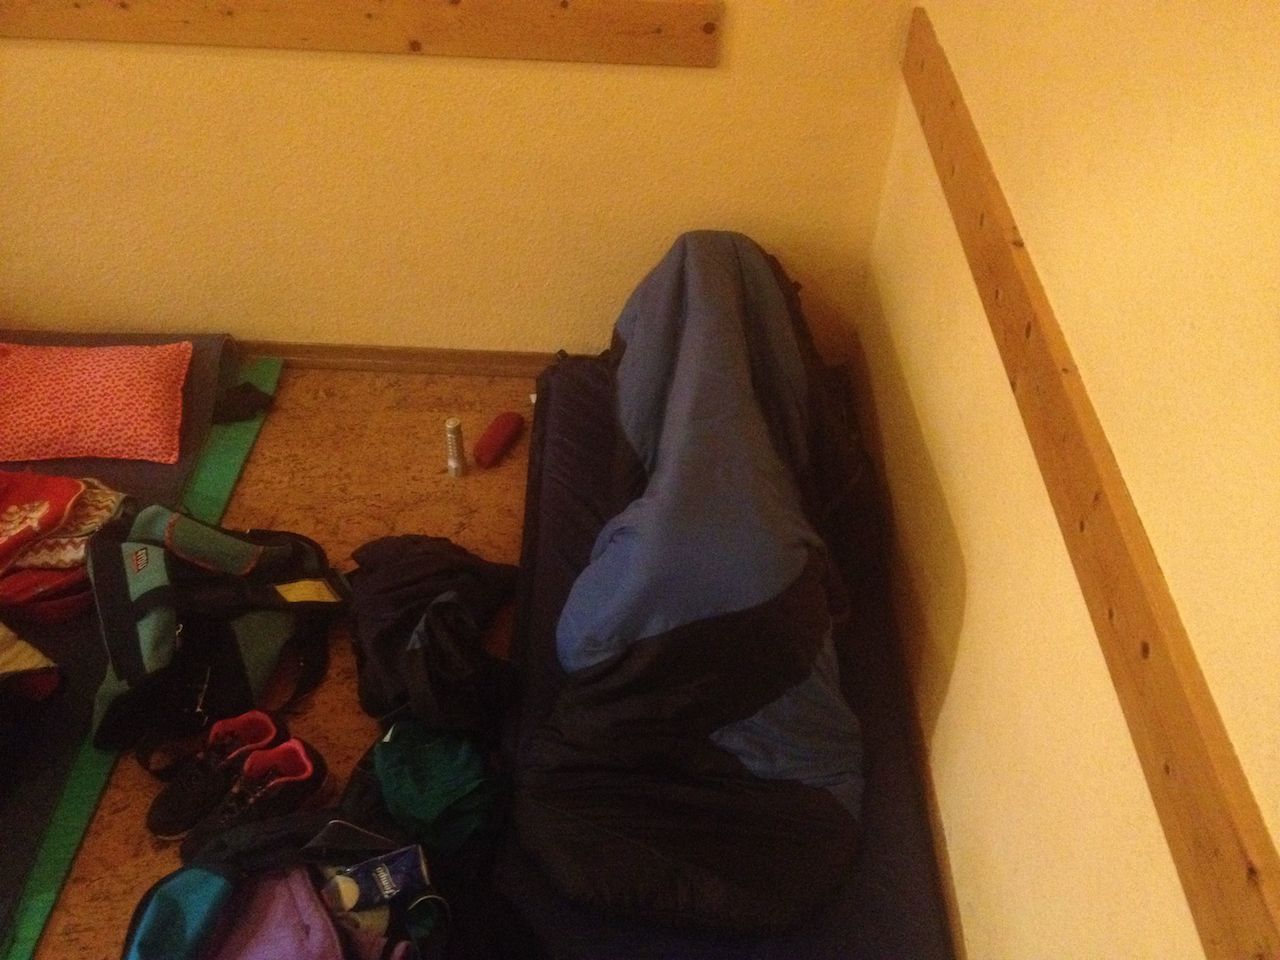 Spielenacht im Oktober 2013 - Unter der Decke versteckt eine Leiterin wohl noch nicht fotohübsch...